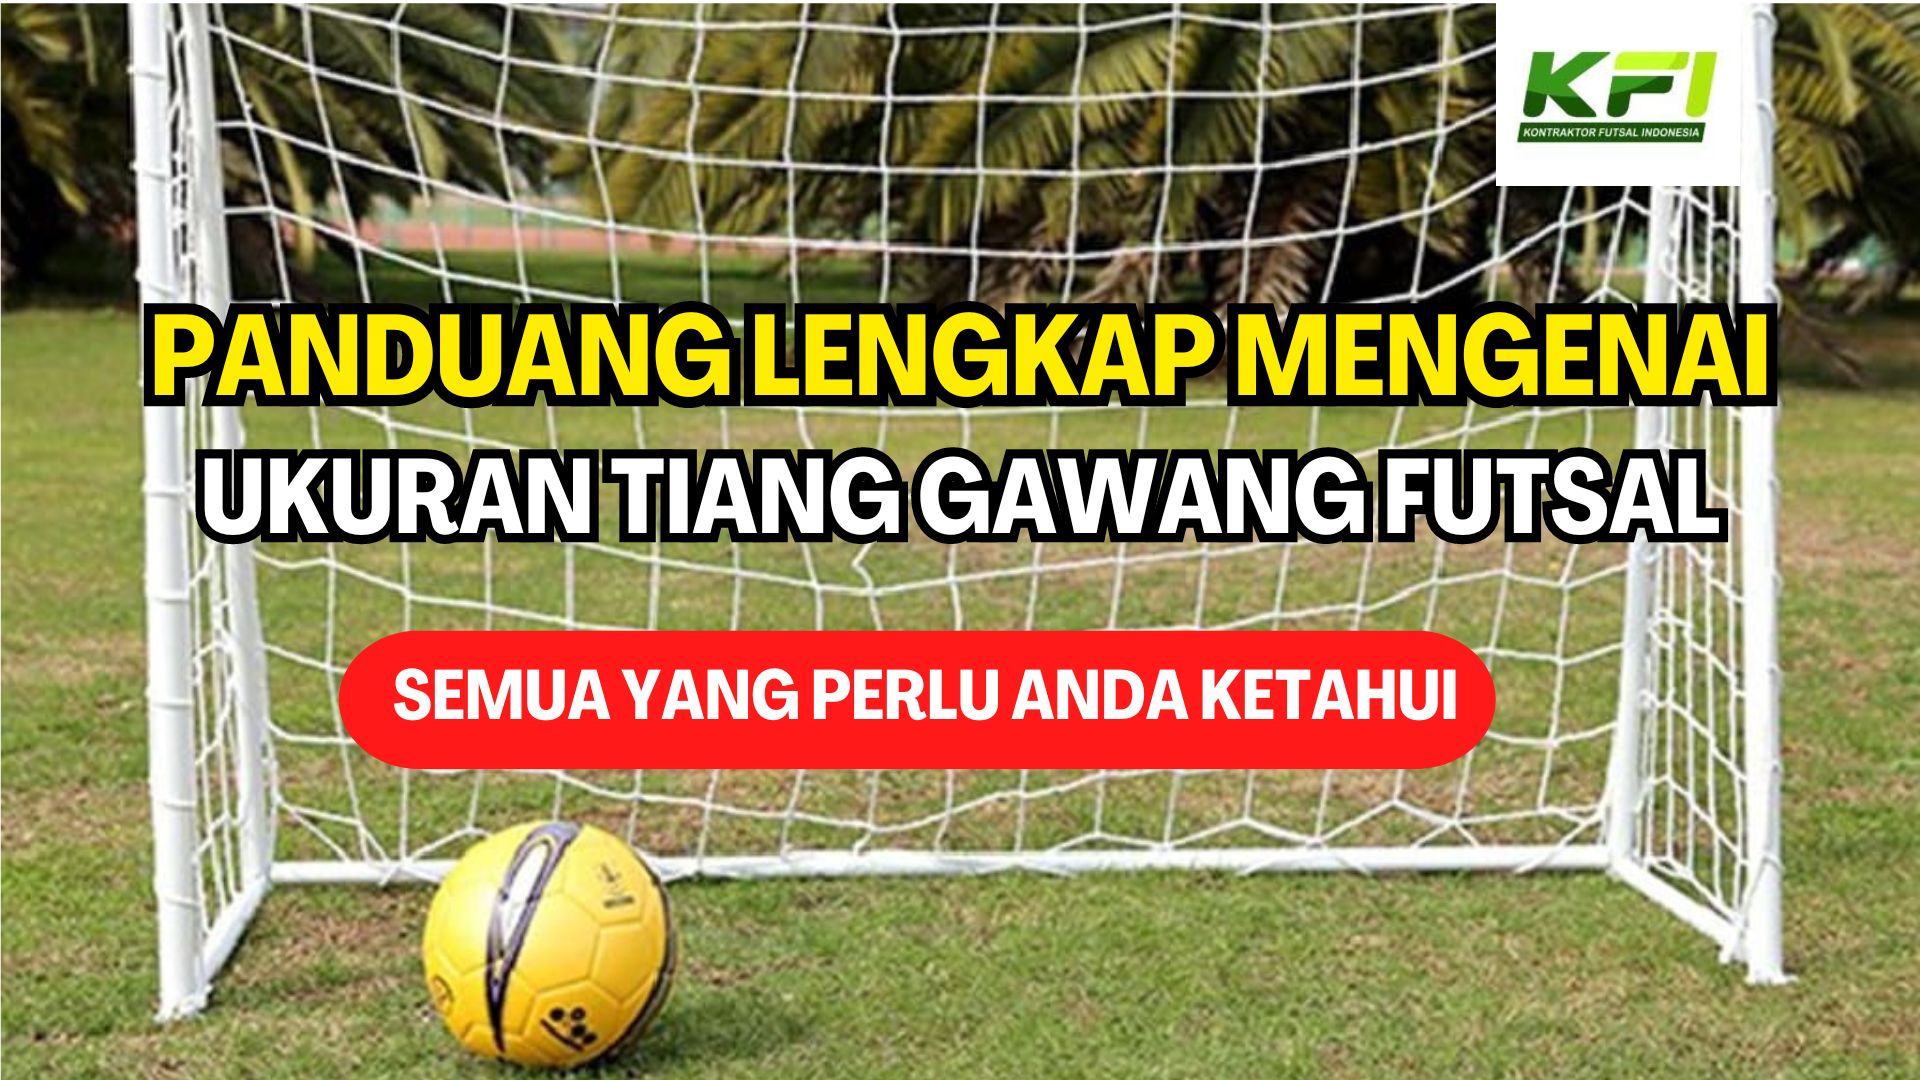 Panduan Lengkap Mengenai Ukuran Tiang Gawang Futsal